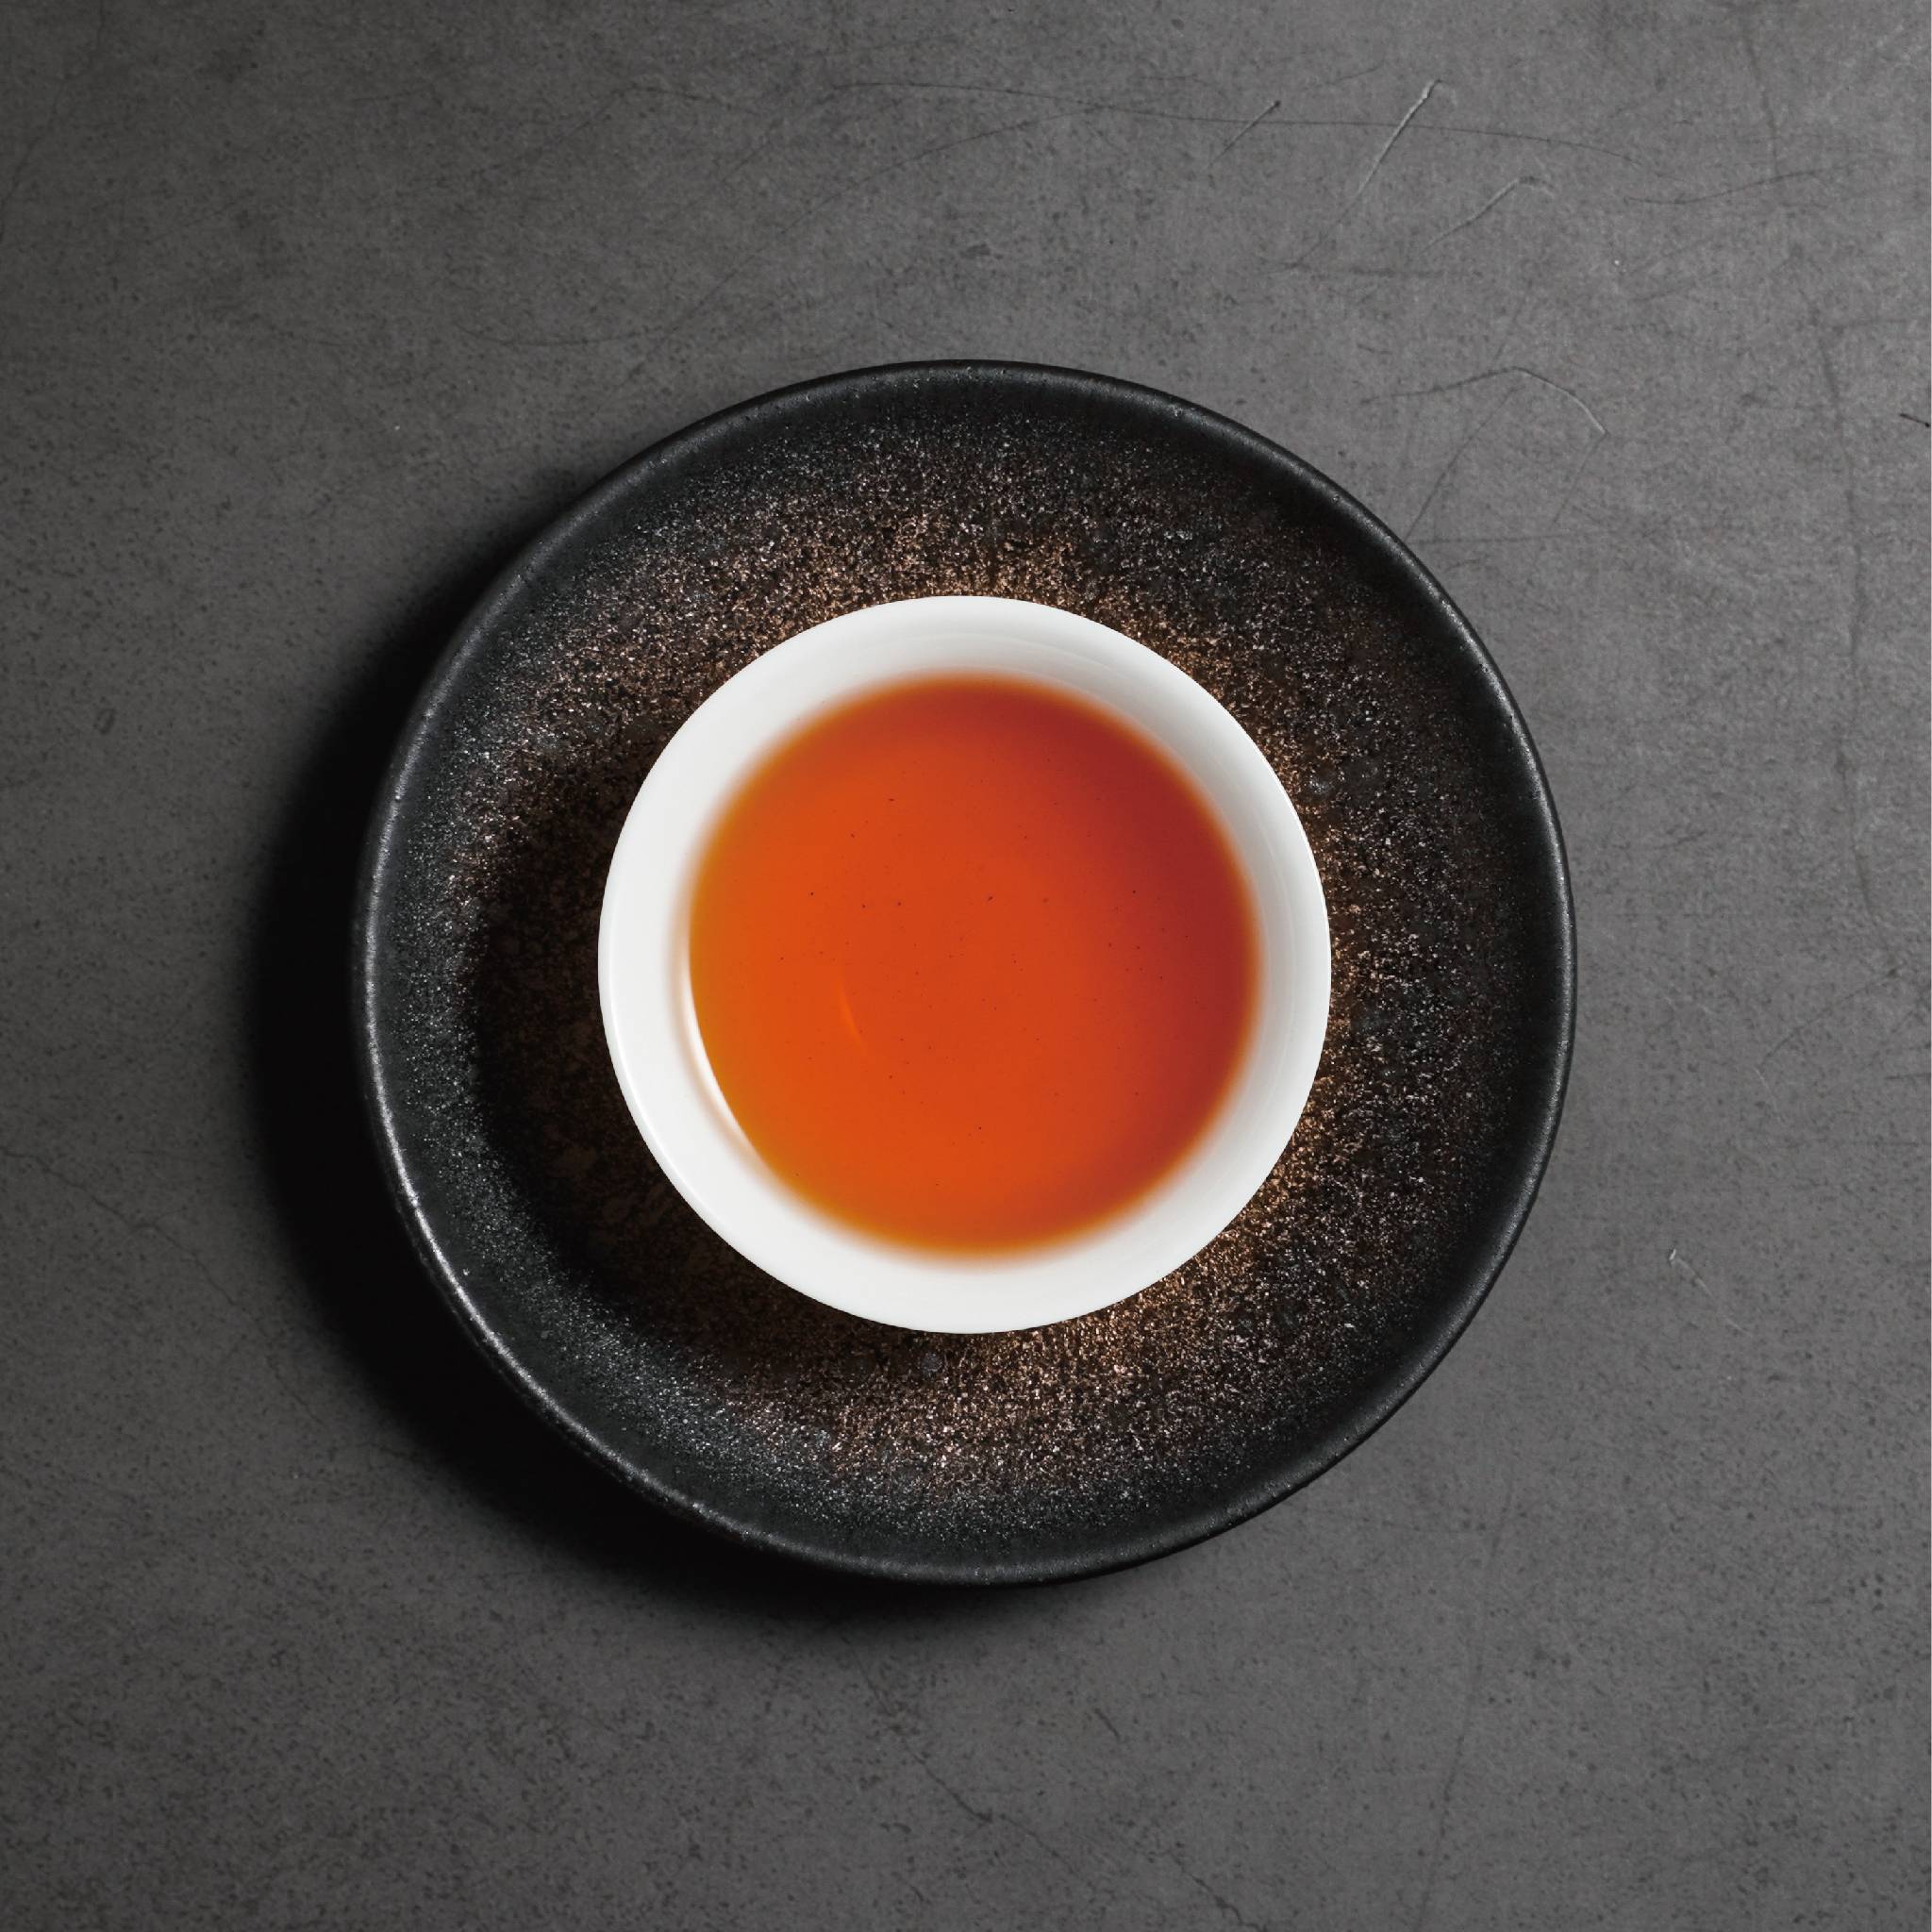 mi xiang honey fragrance black tea tea liquor in cup